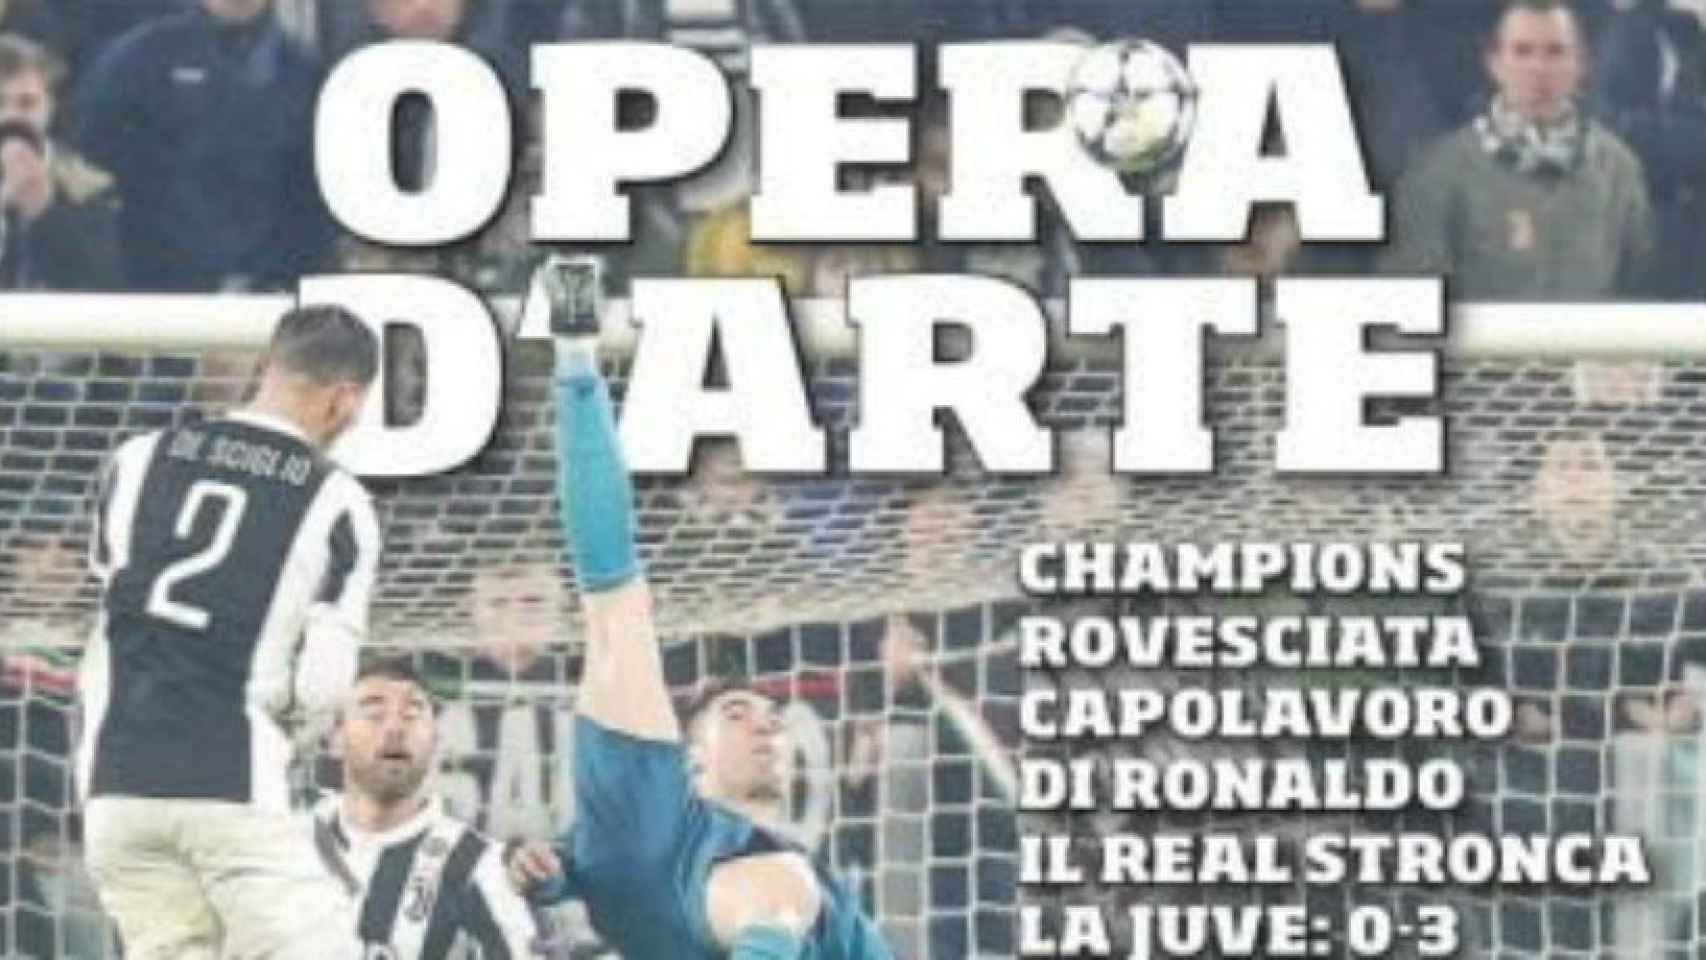 Portada Corriere dello Sport